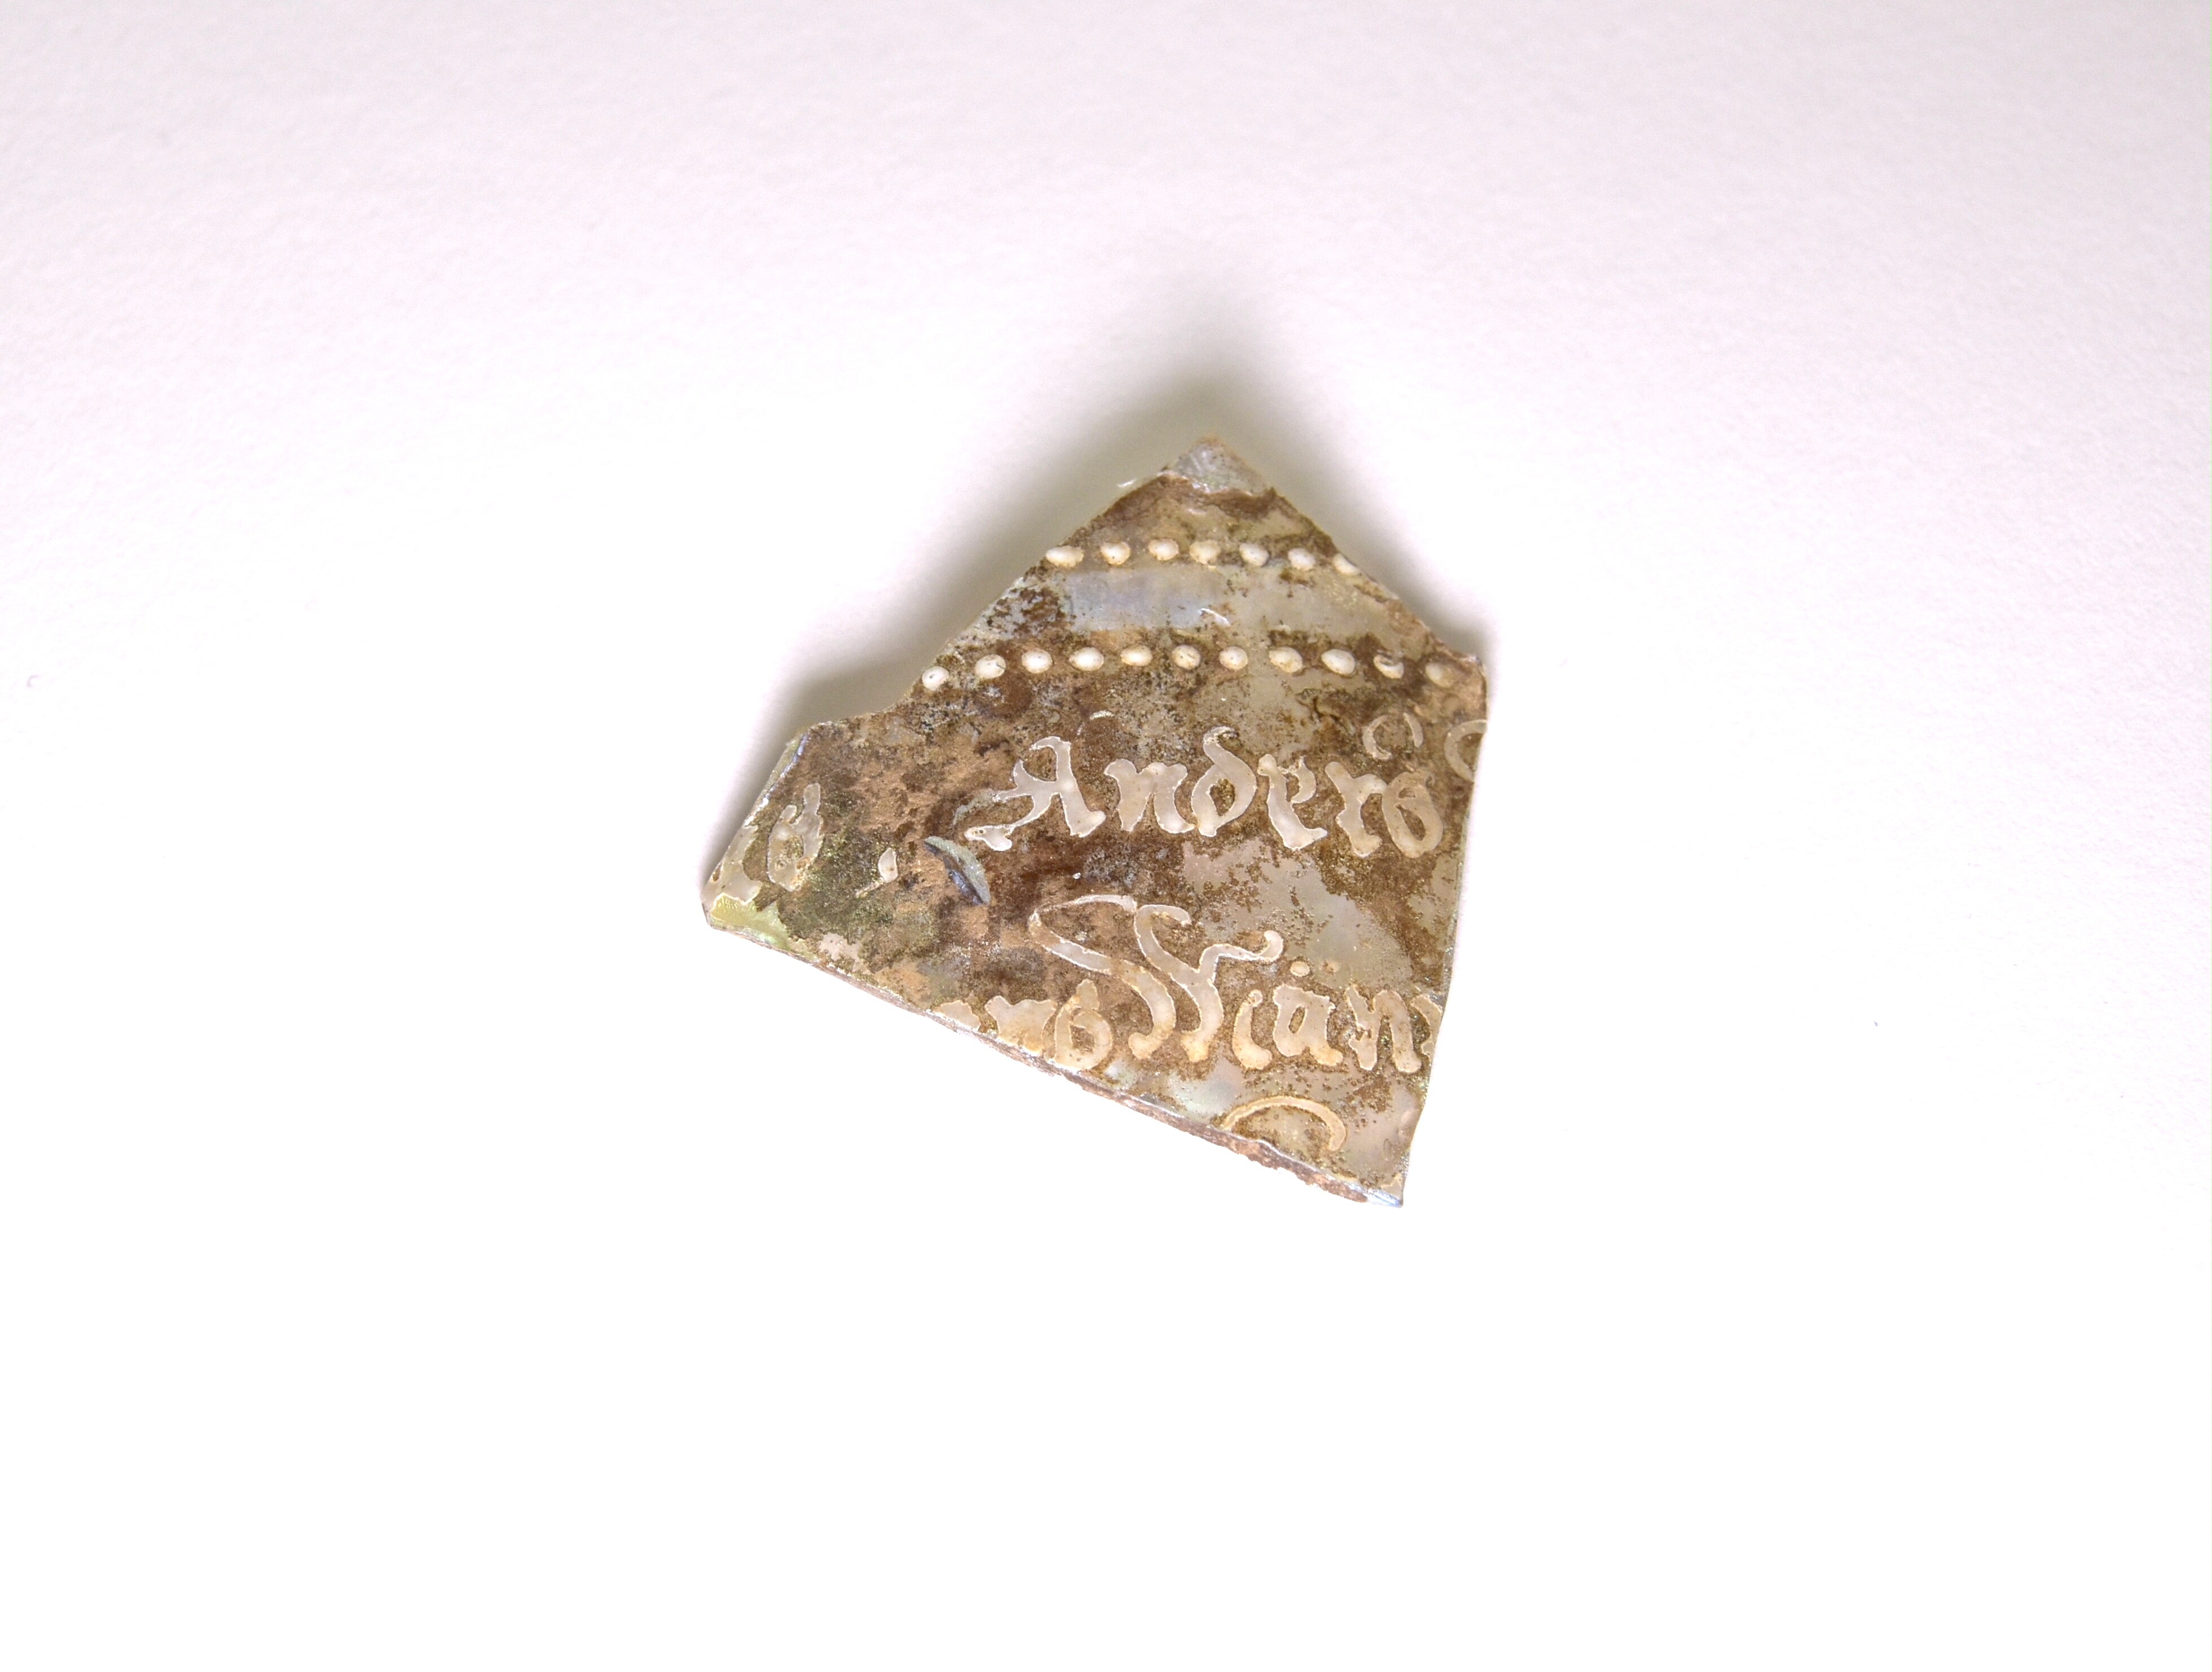 Scherbe eines emailbemalten Humpens mit Inschrift (Museum Angermünde CC BY-NC-SA)